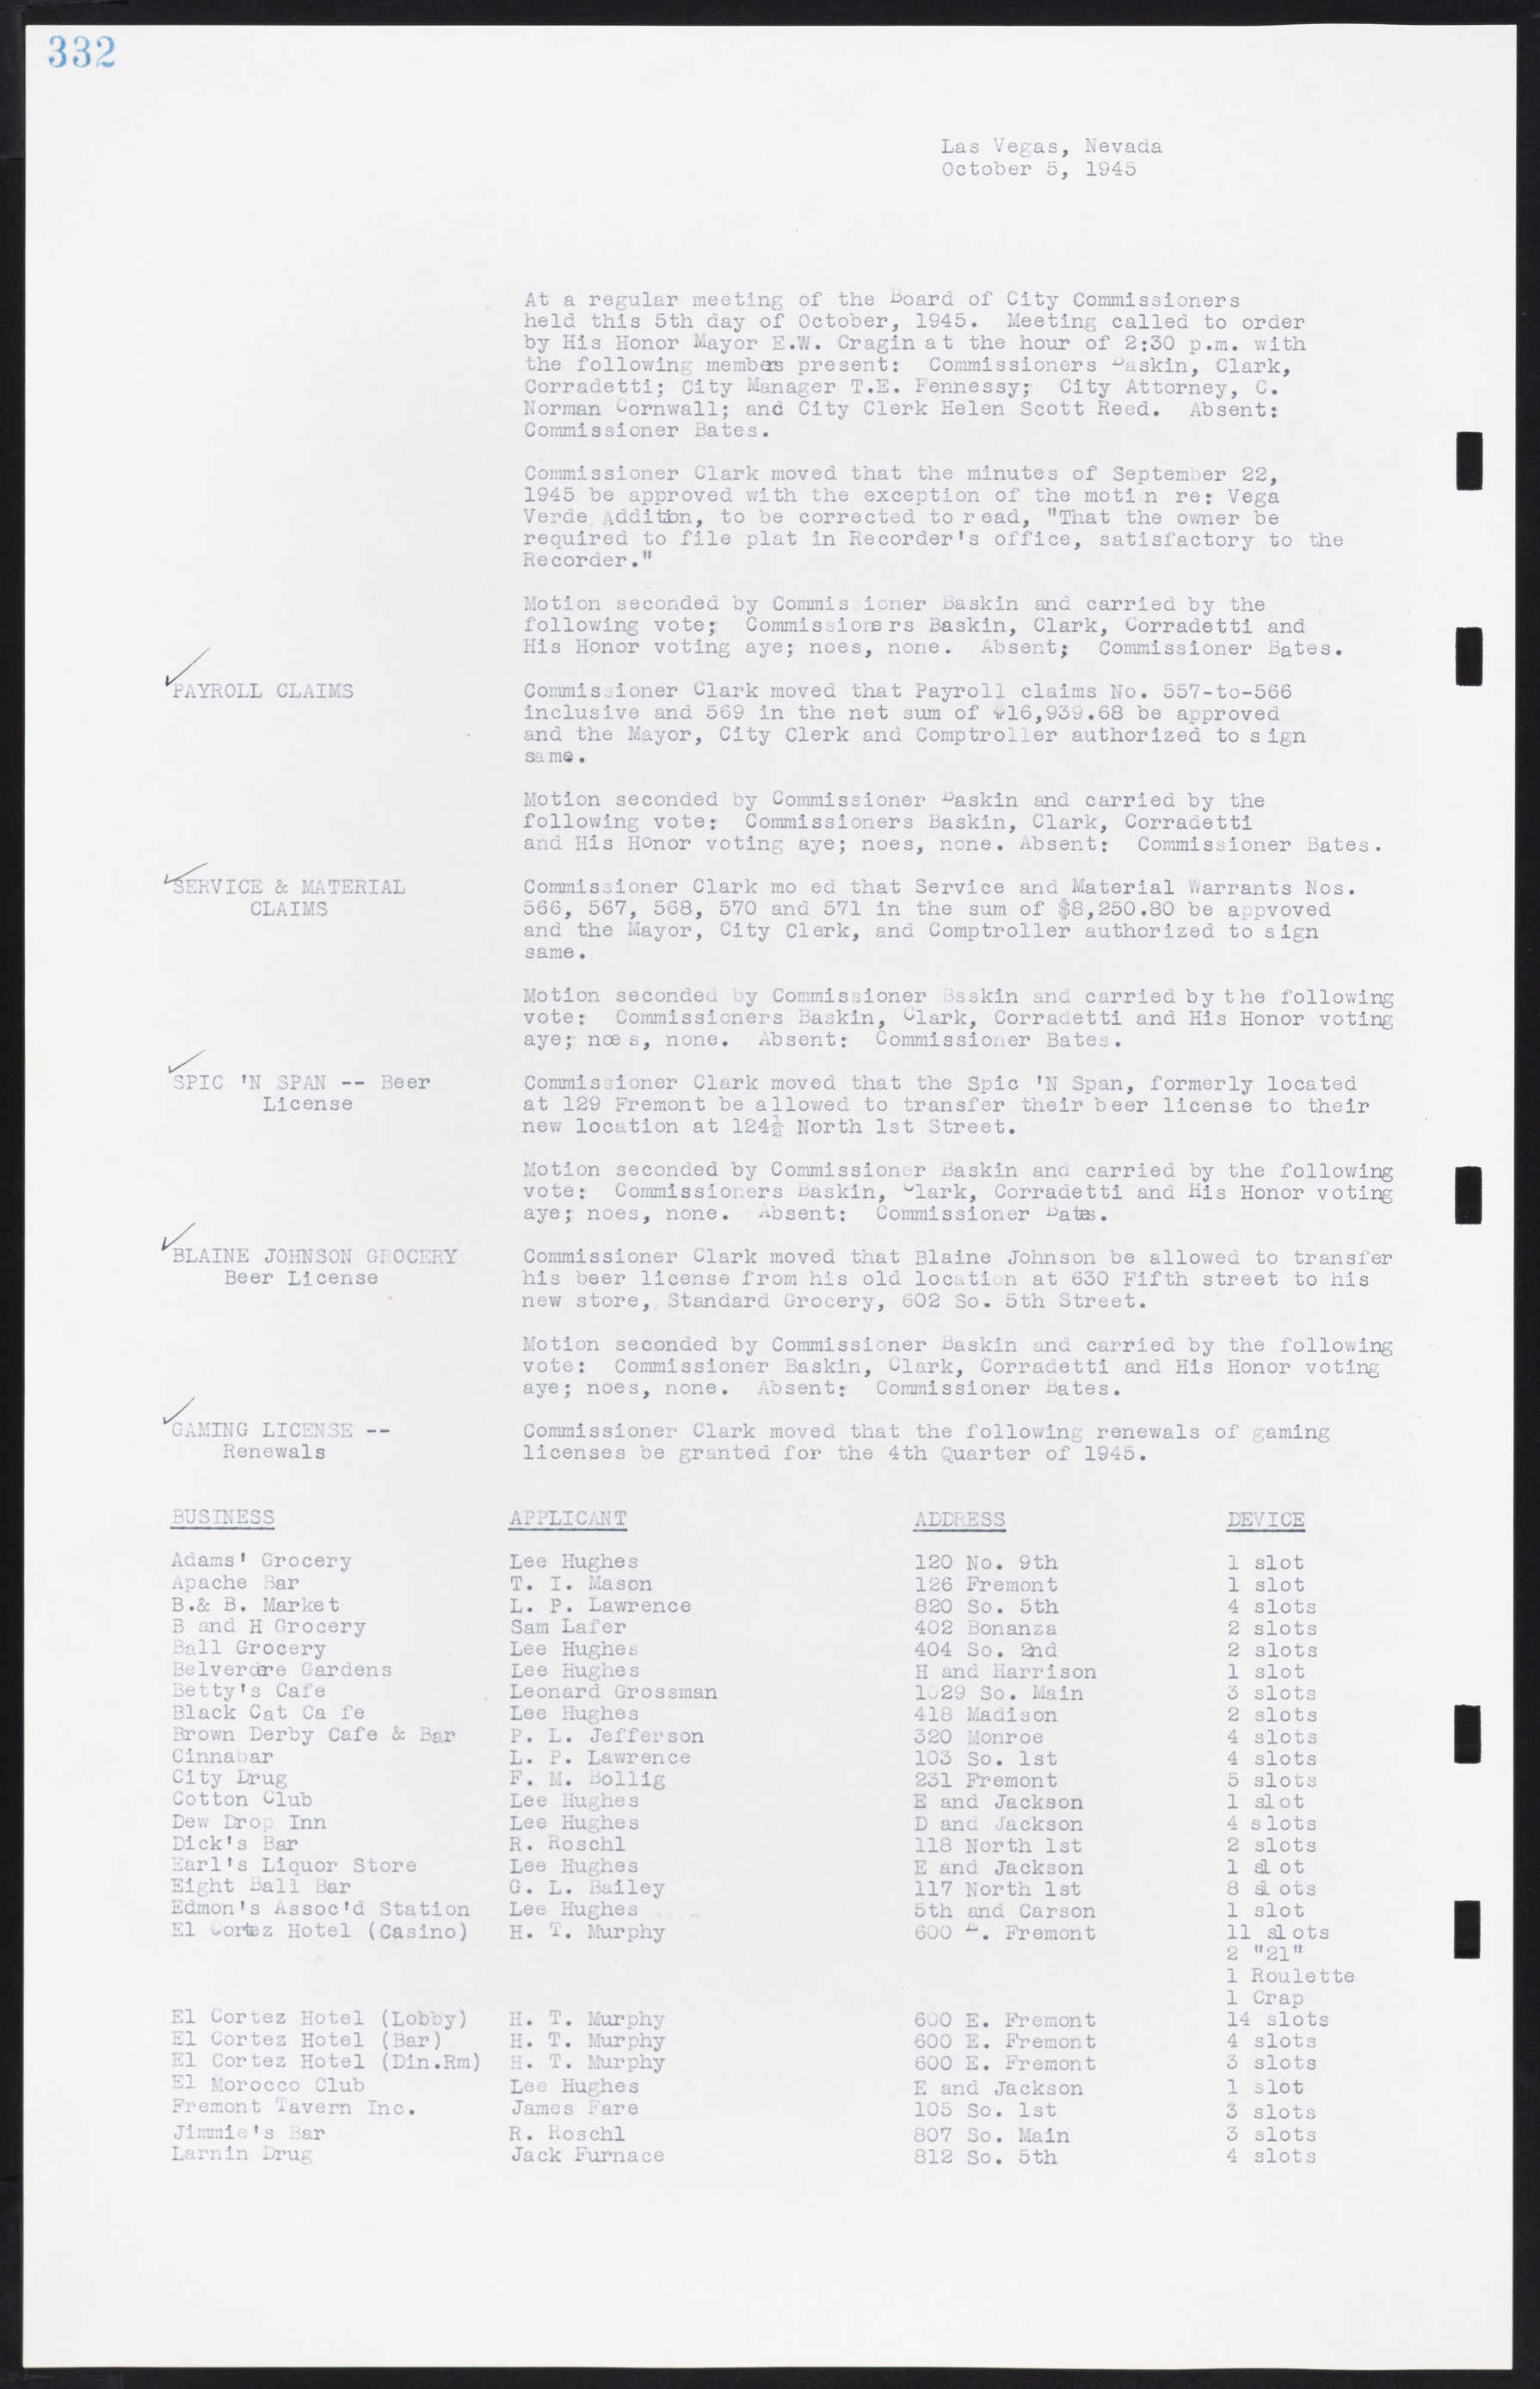 Las Vegas City Commission Minutes, August 11, 1942 to December 30, 1946, lvc000005-356